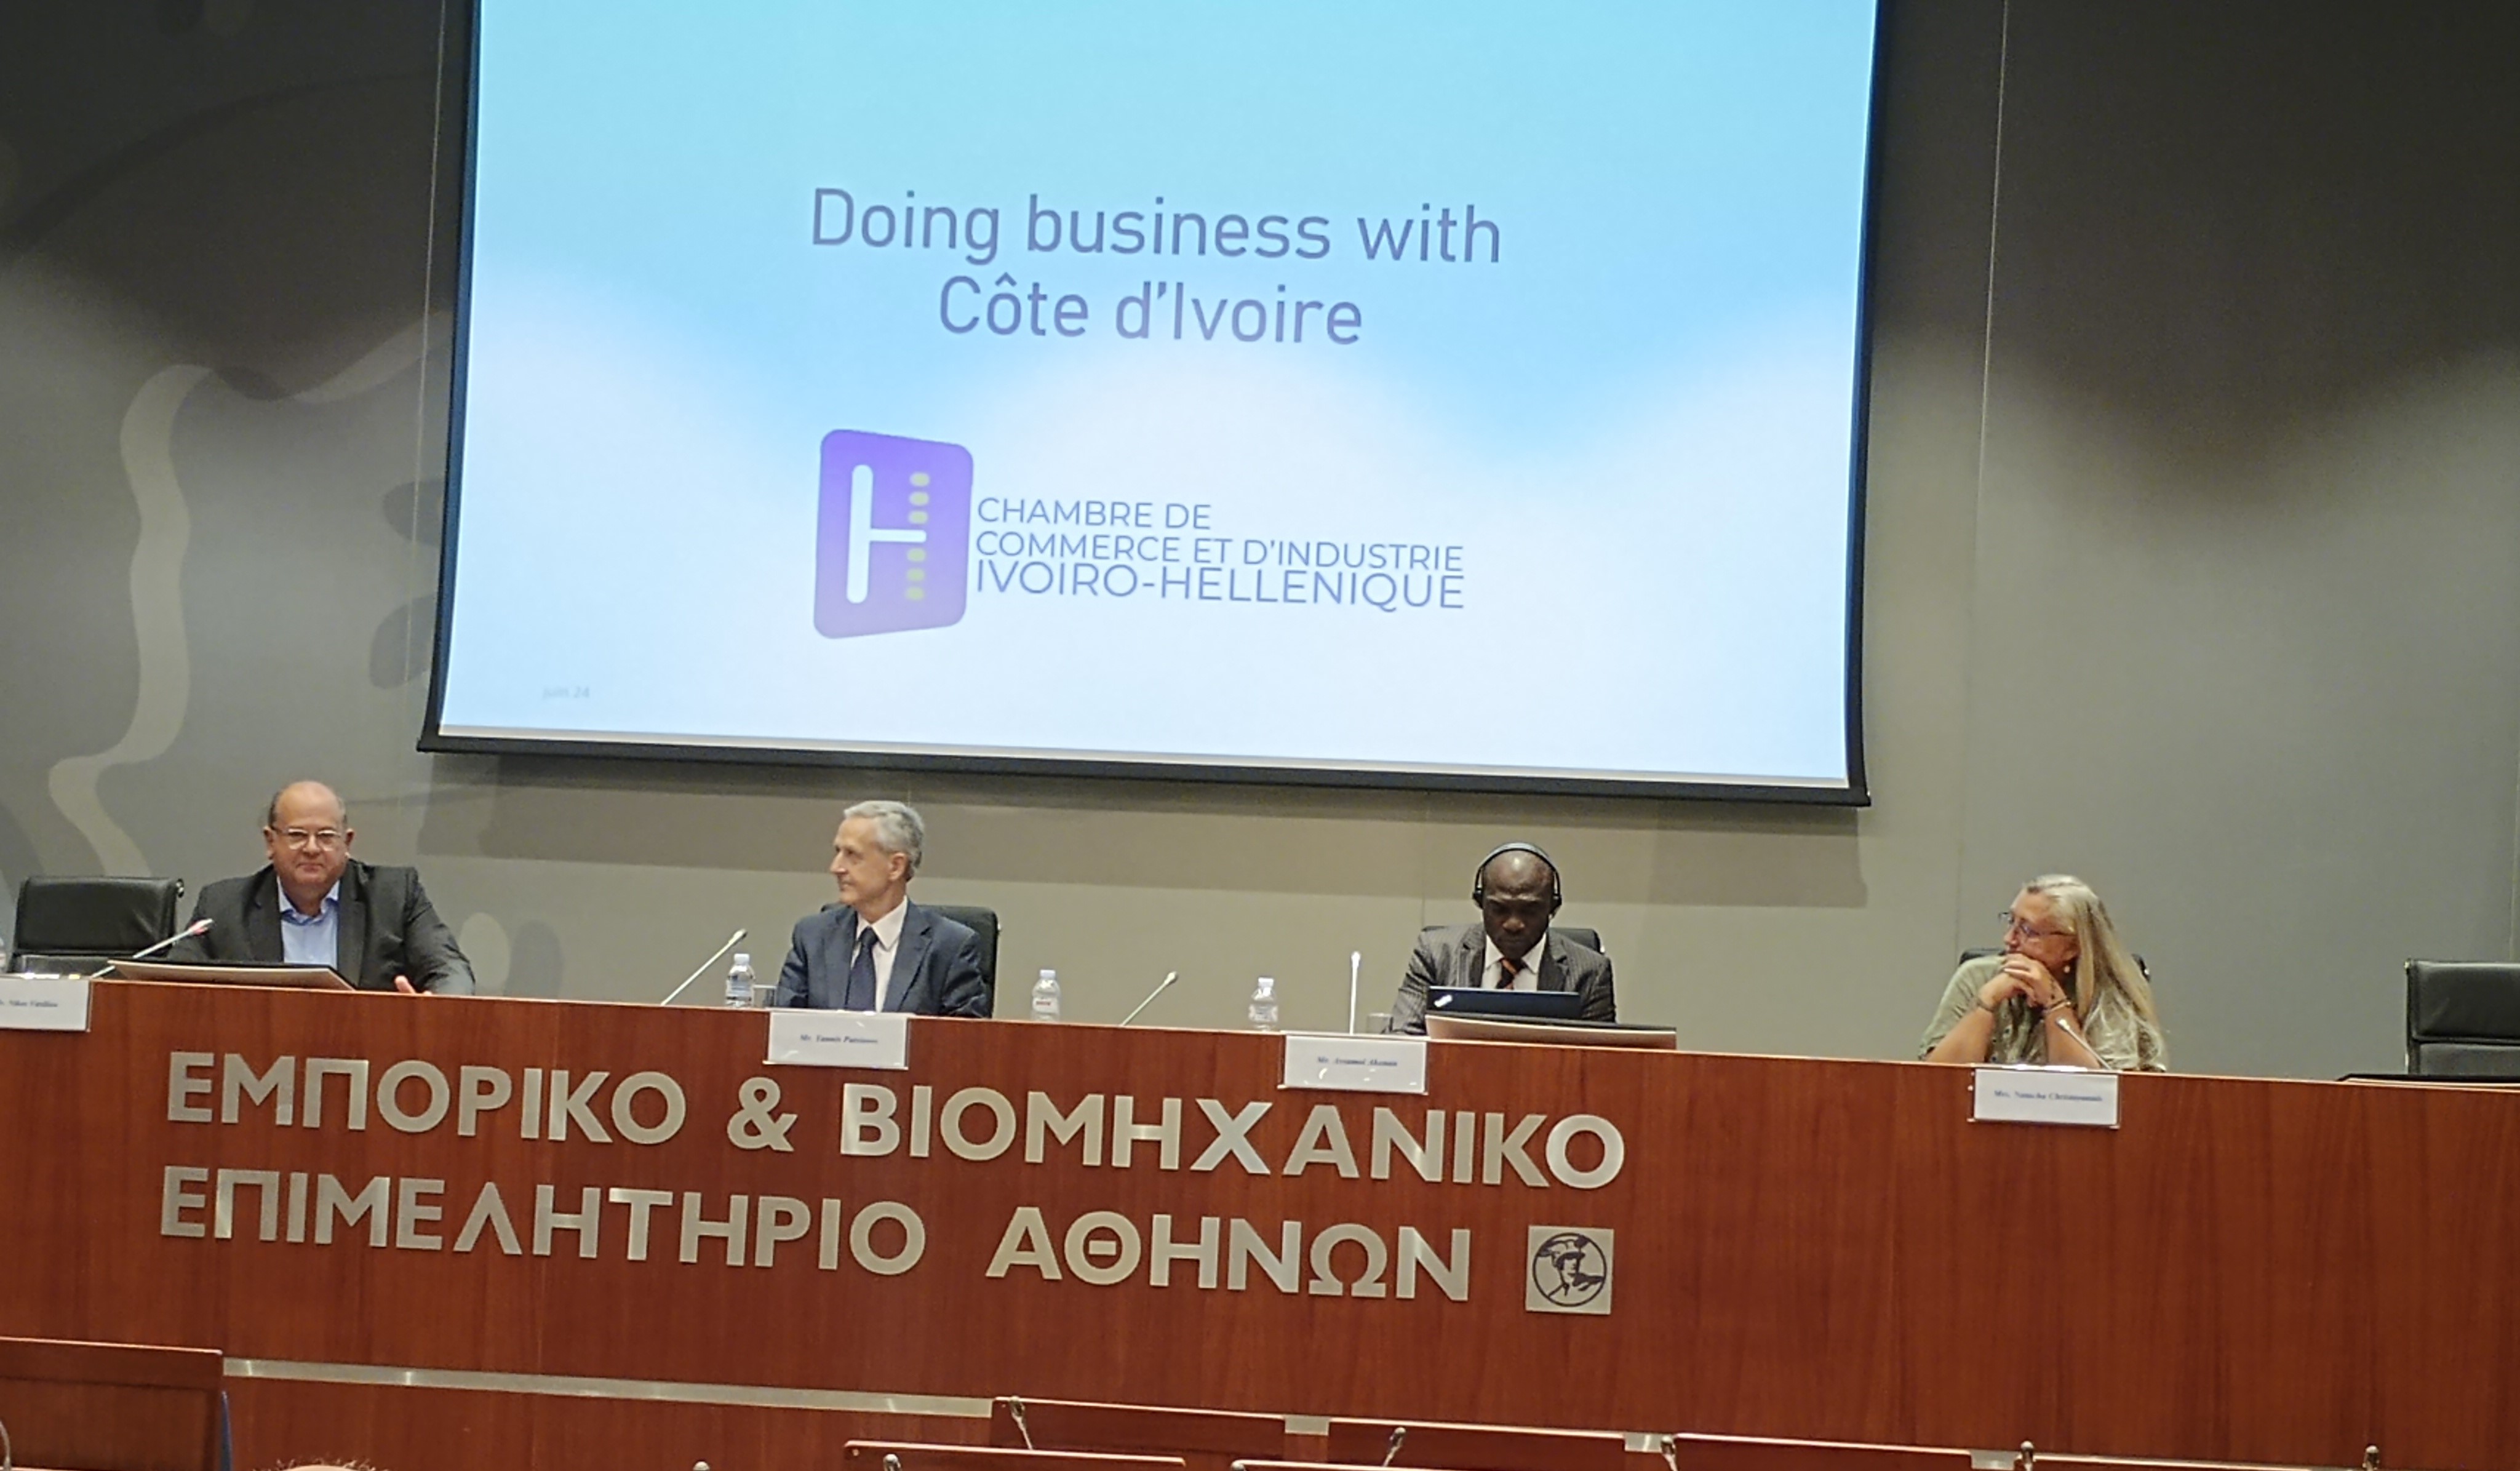 Δελτίο Τύπου:" Doing Business with  Cote d’  Ivoire "